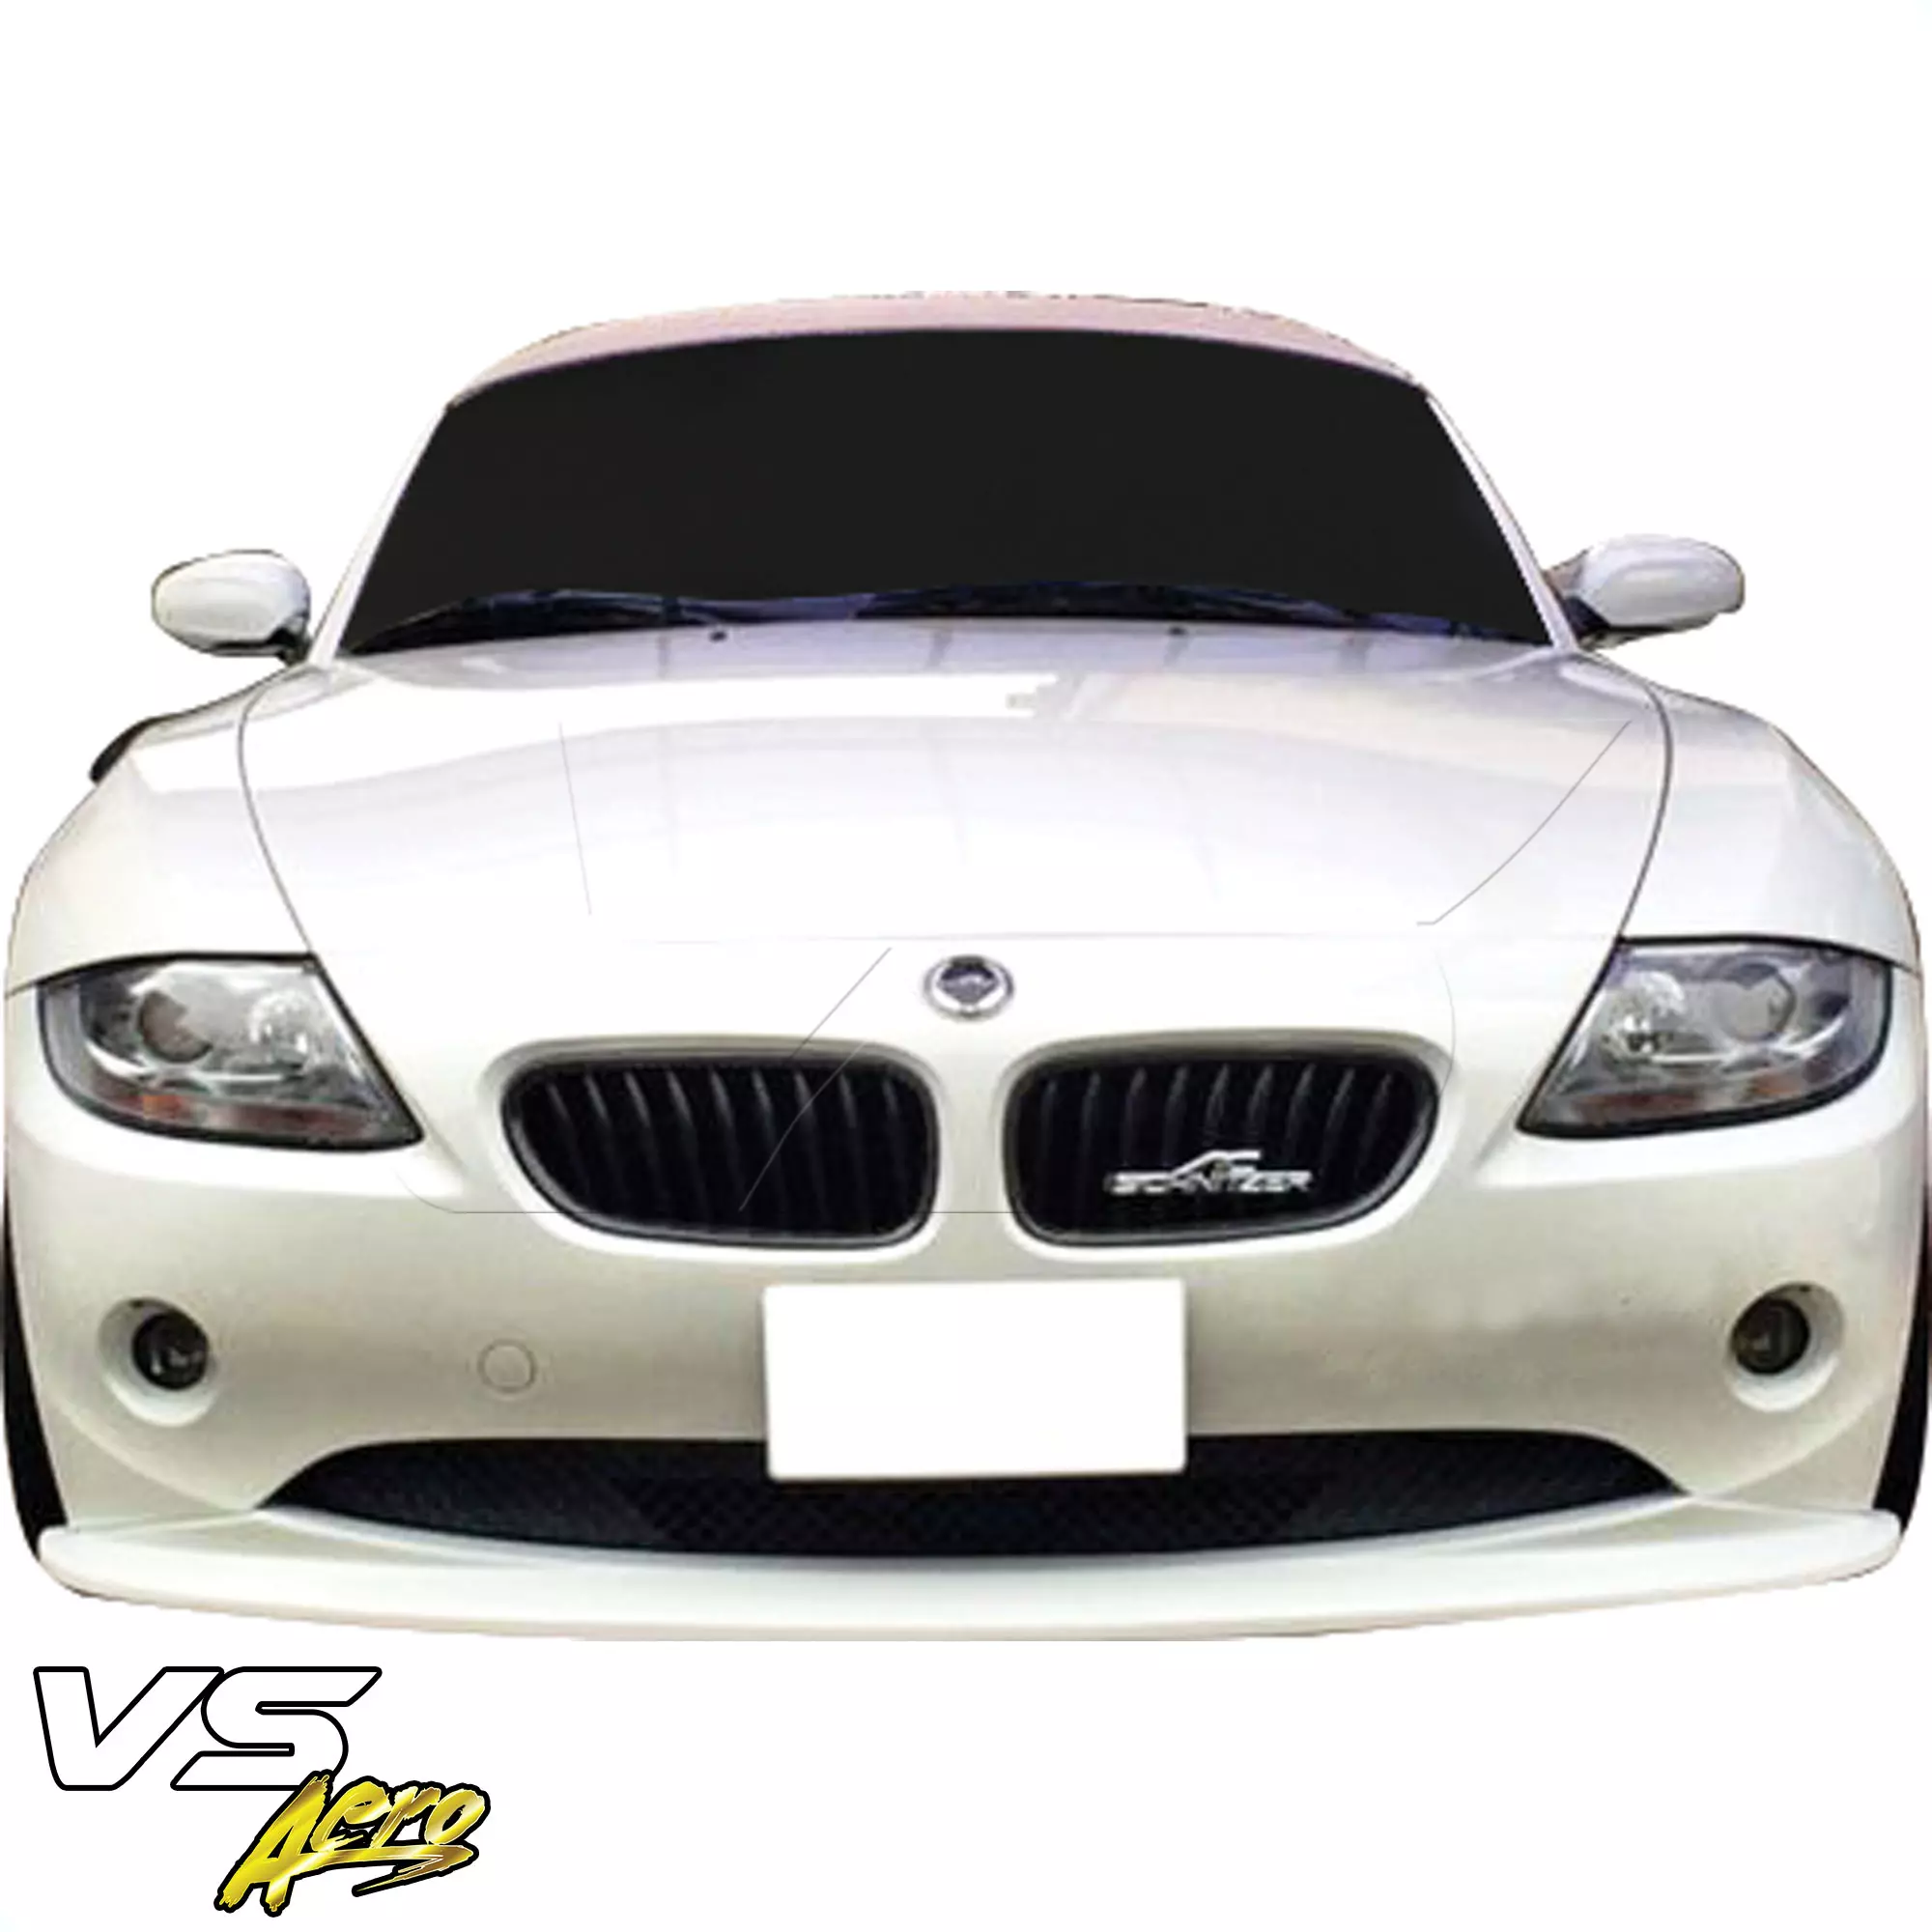 VSaero FRP HAMA Front Lip Valance > BMW Z4 E85 2003-2005 - Image 6